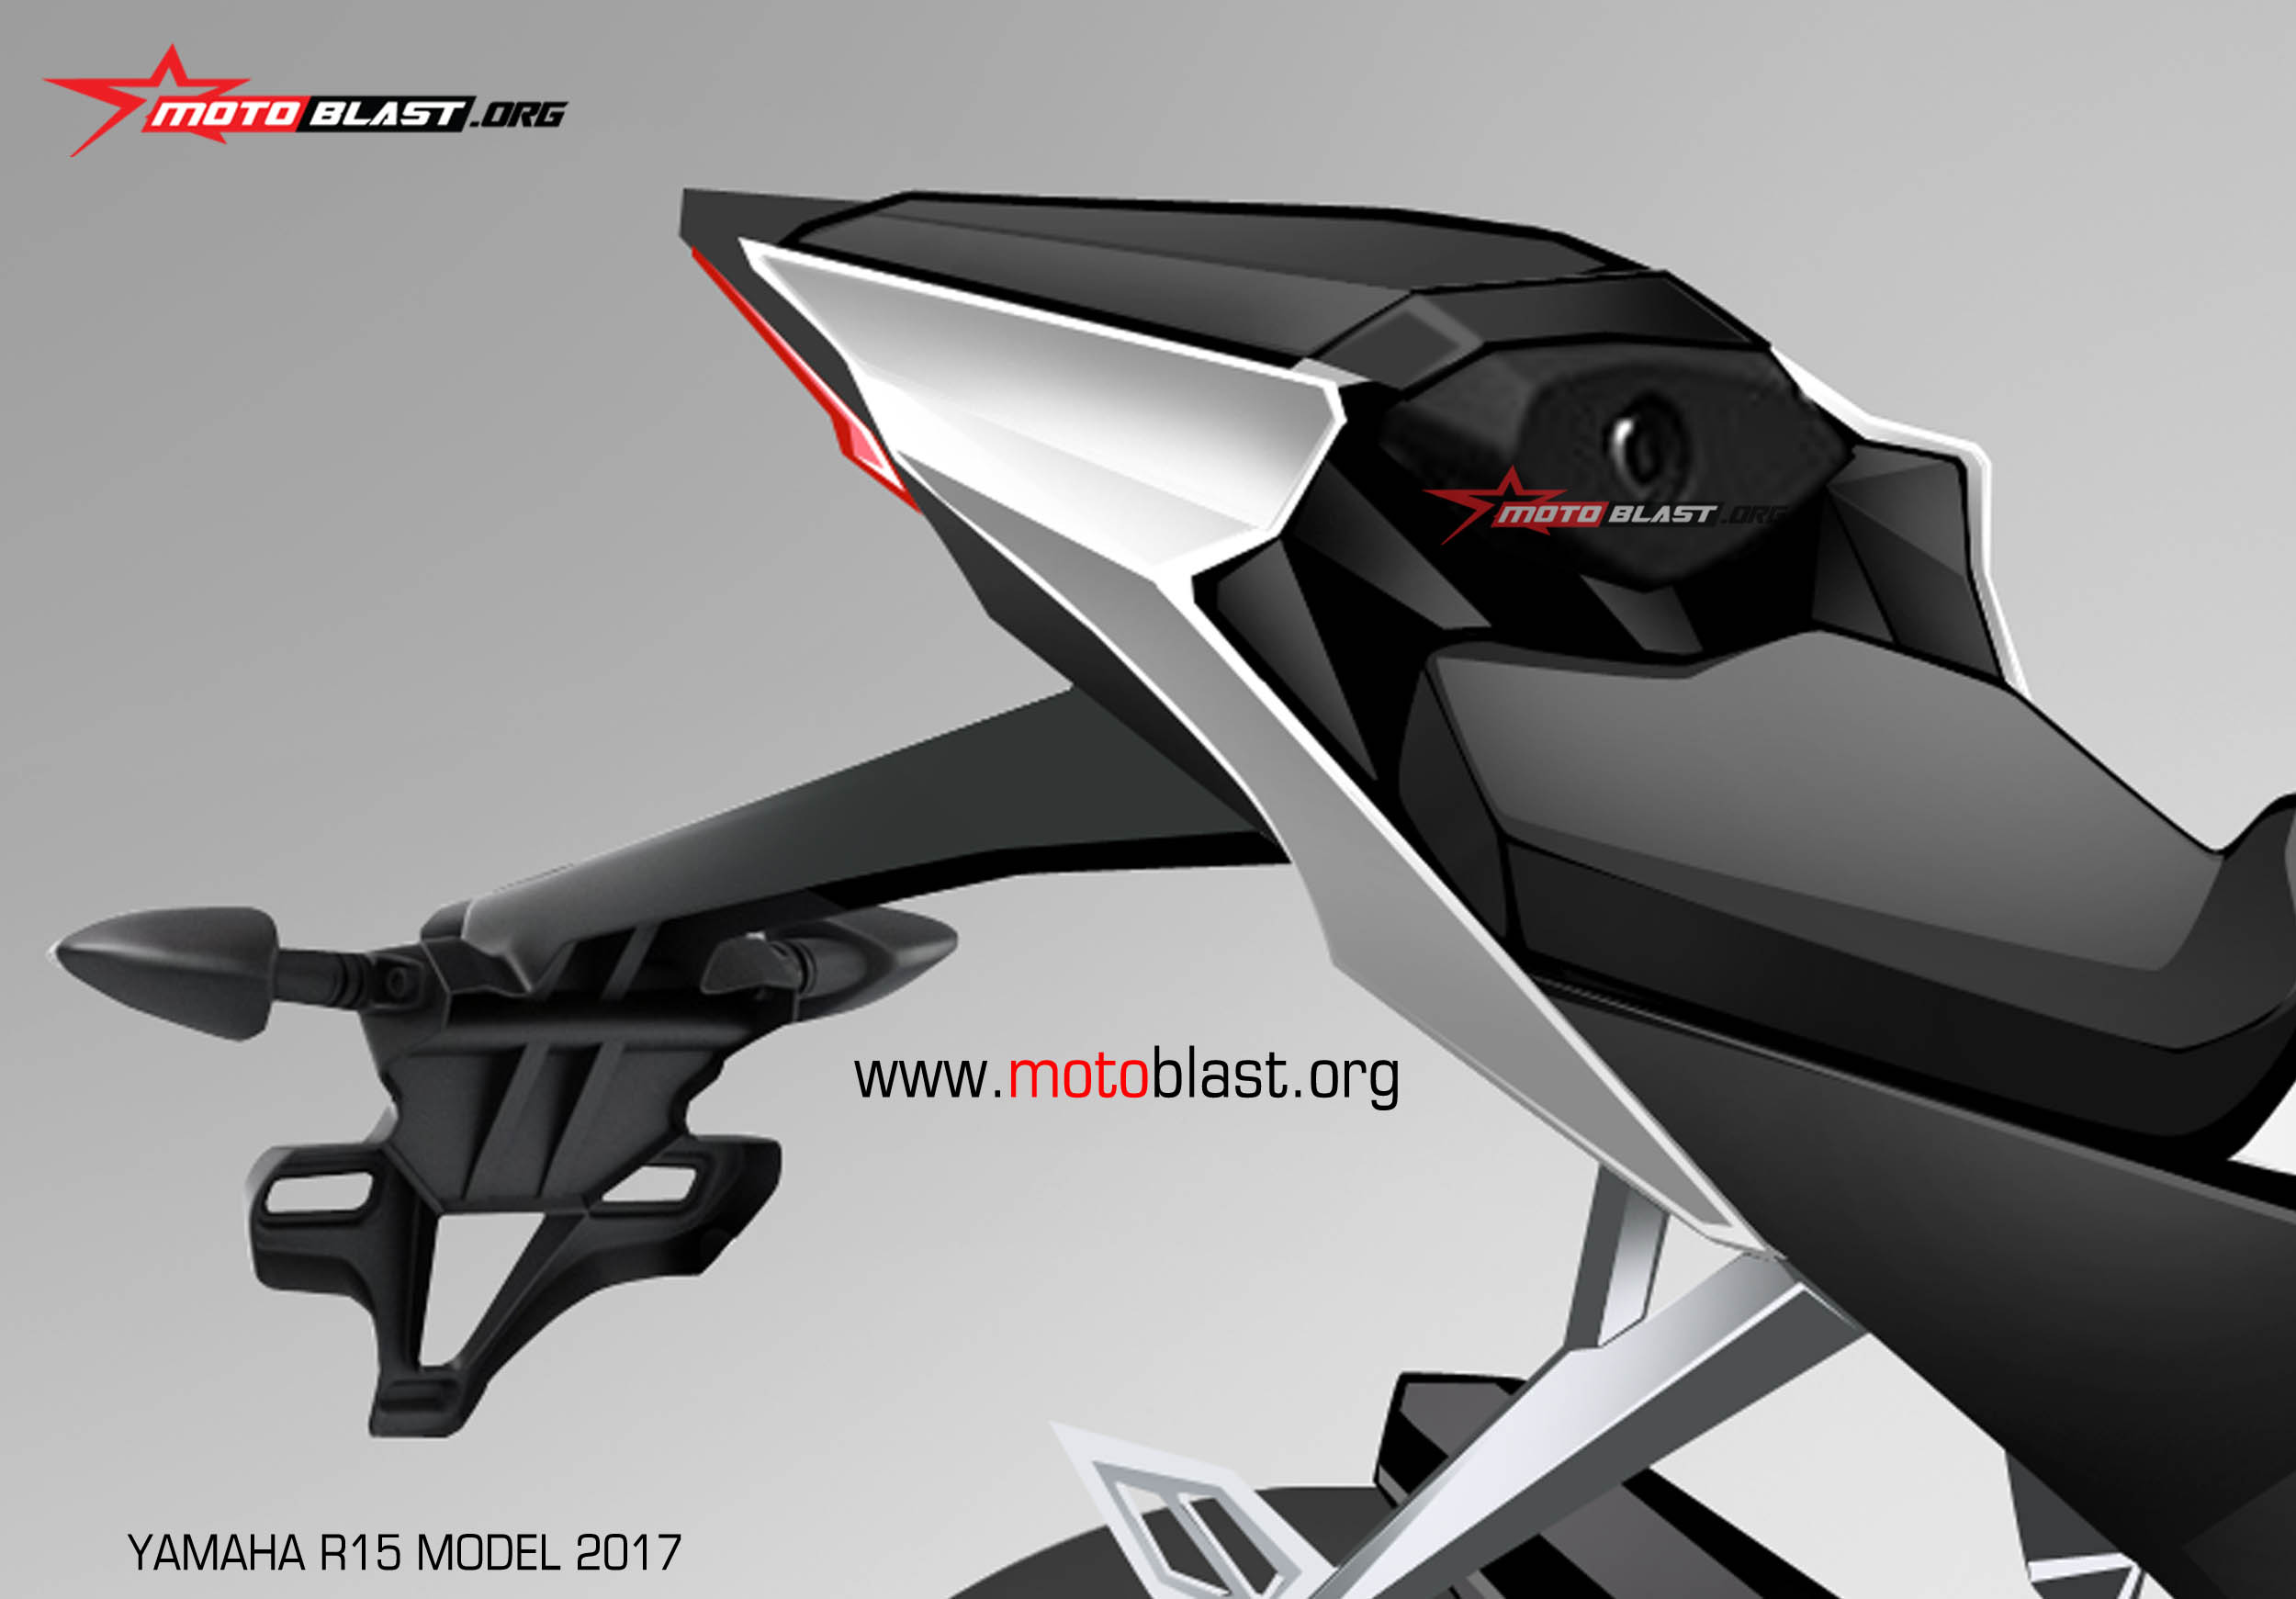 Motoblast HOT Update Rendering Terbaru Yamaha R15 Model 2017